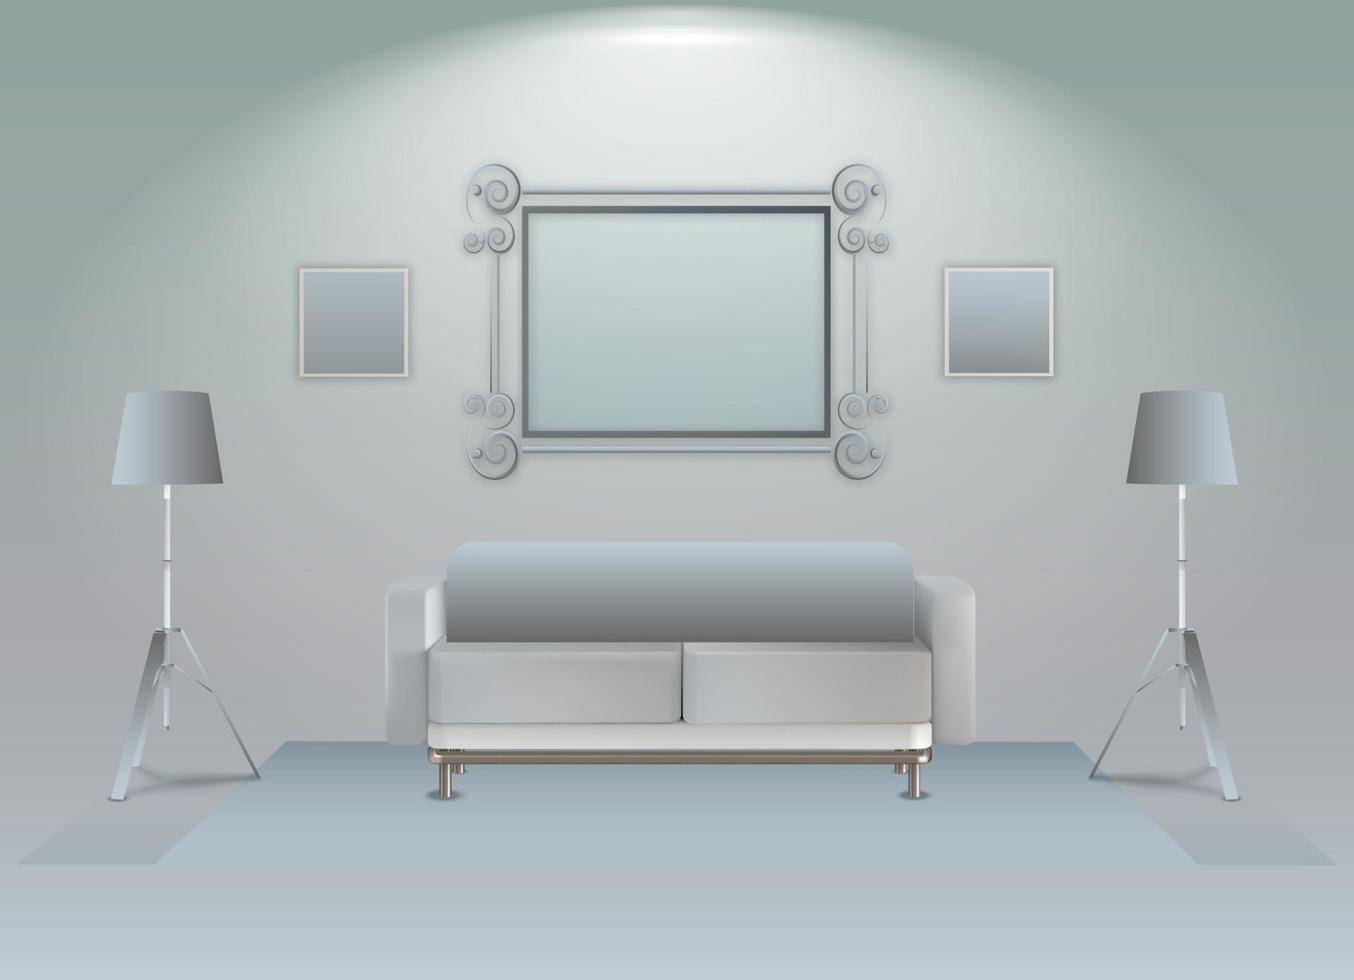 ilustration grafico vettoriale dell'interno realistico dello specchio a parete